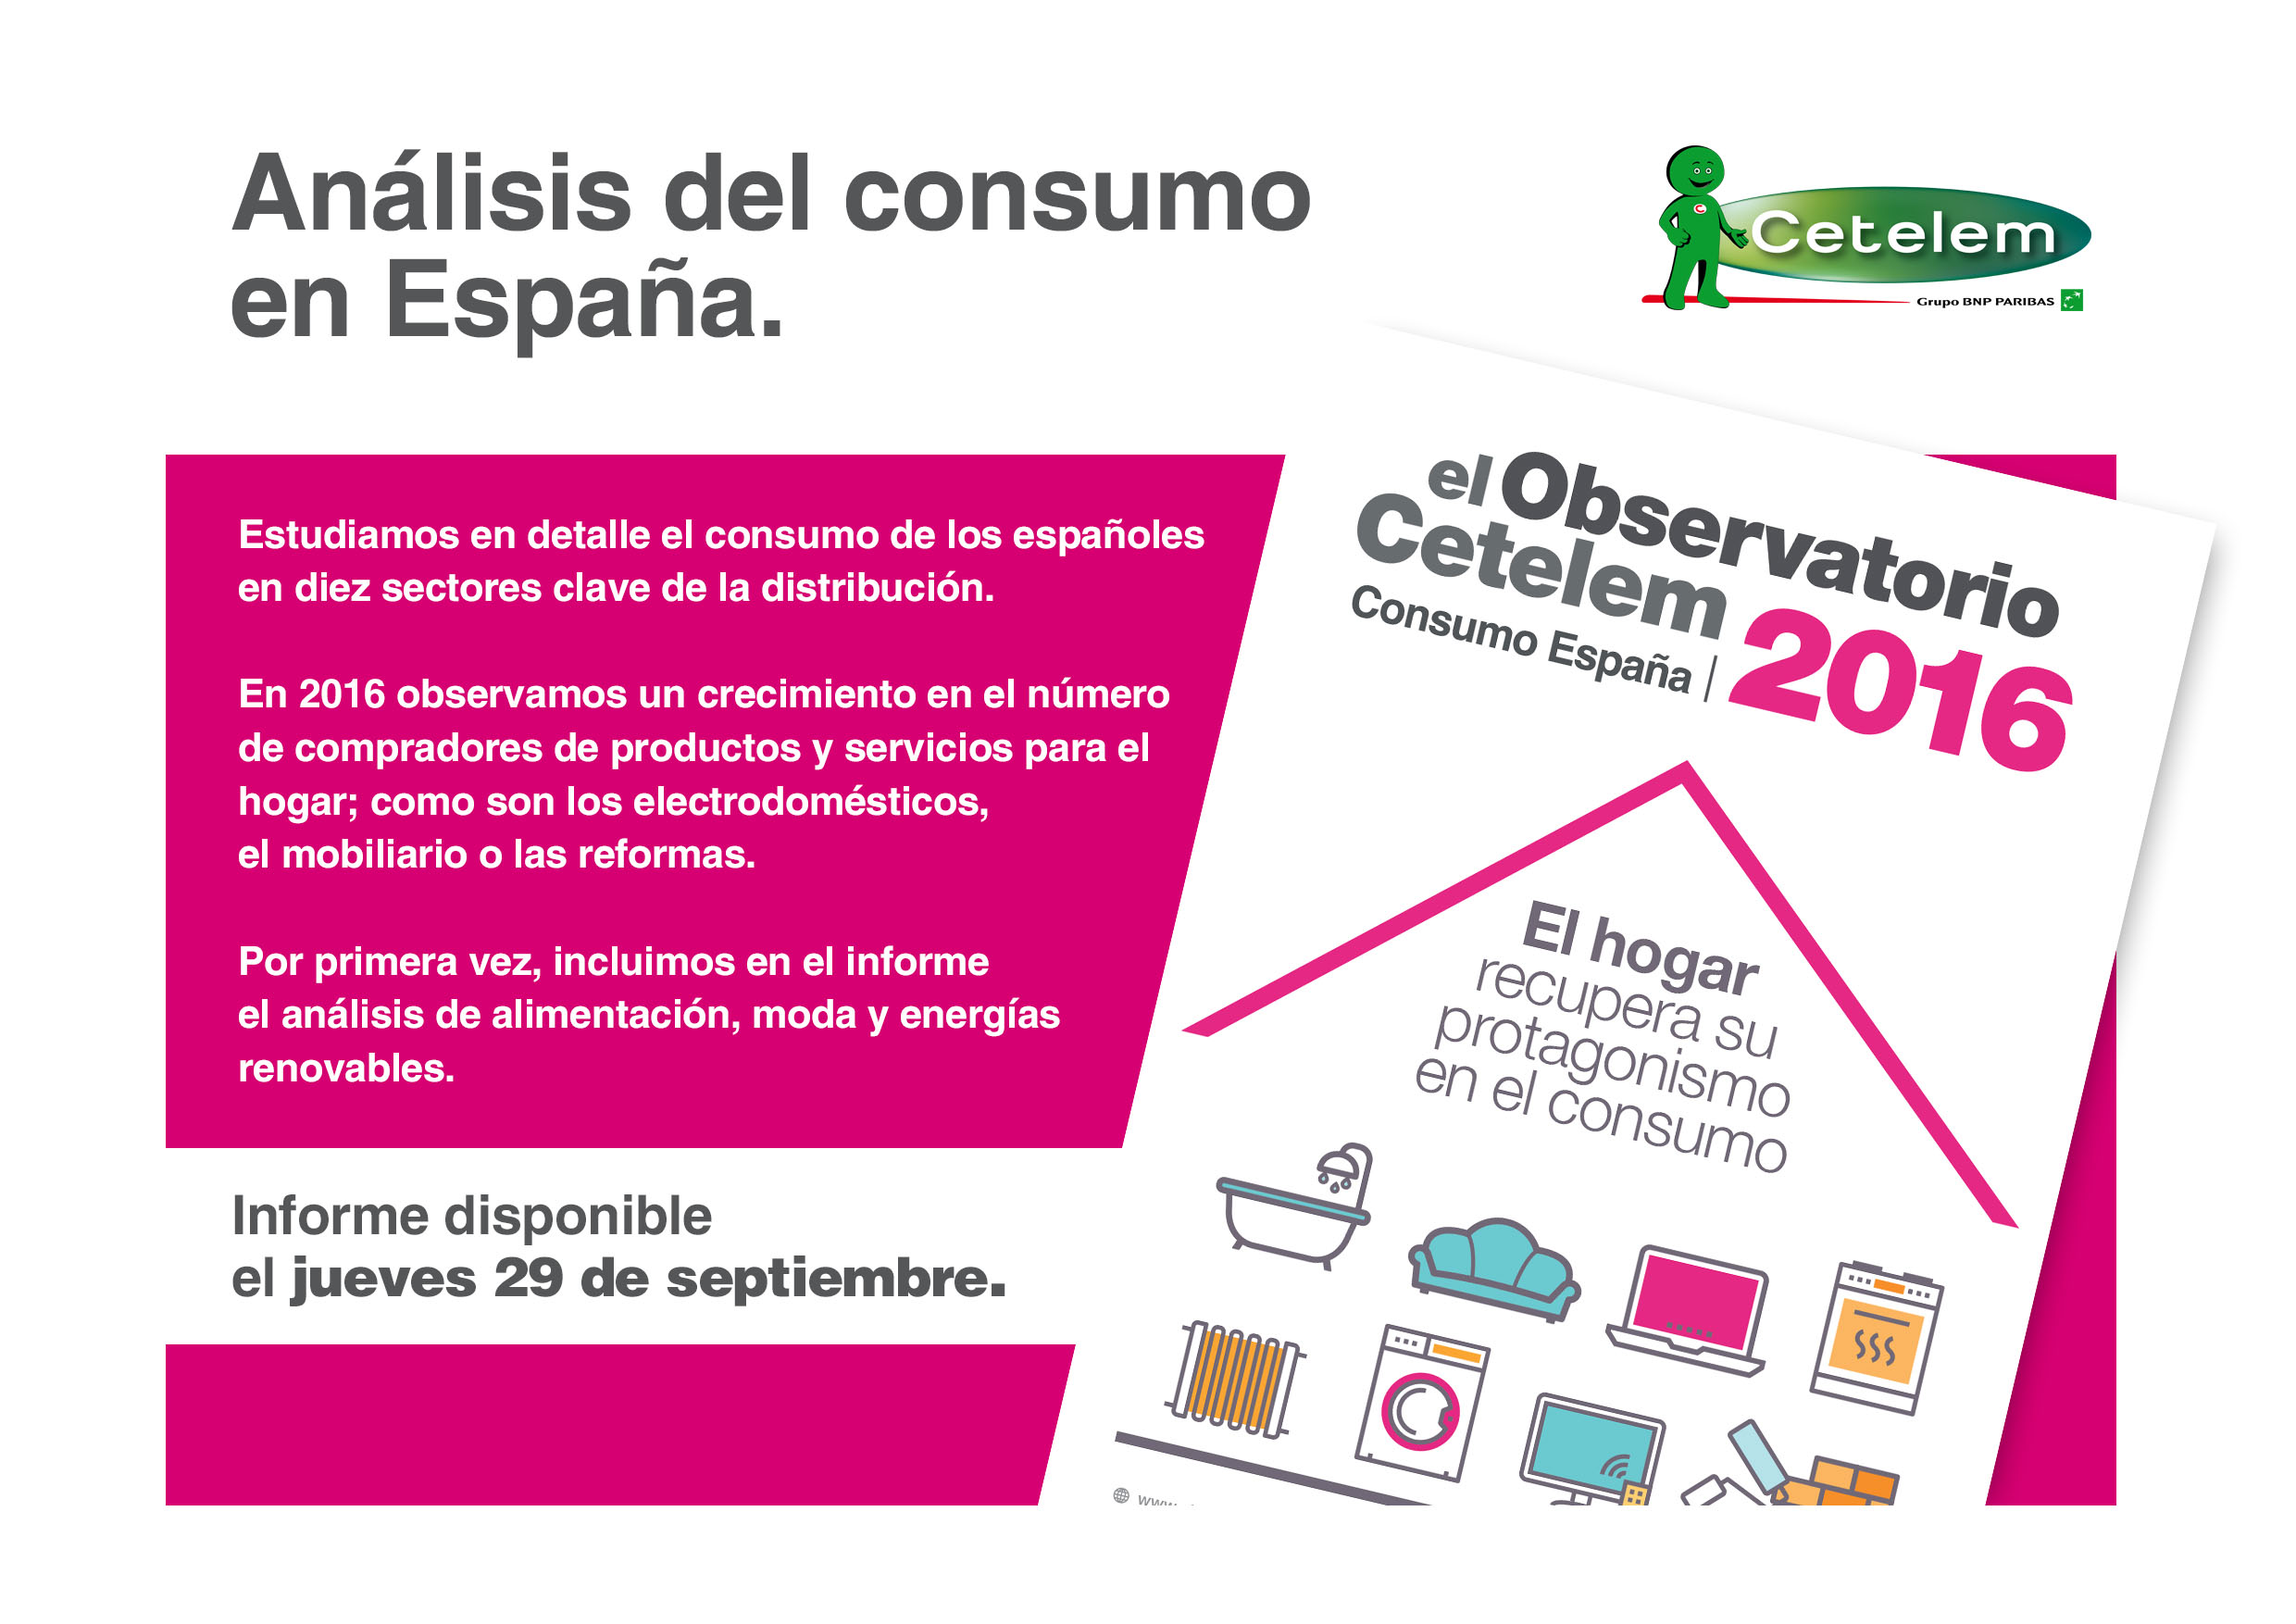 Observatorio Cetelem de Consumo en España 2016 - Disponible el 29 de septiembre